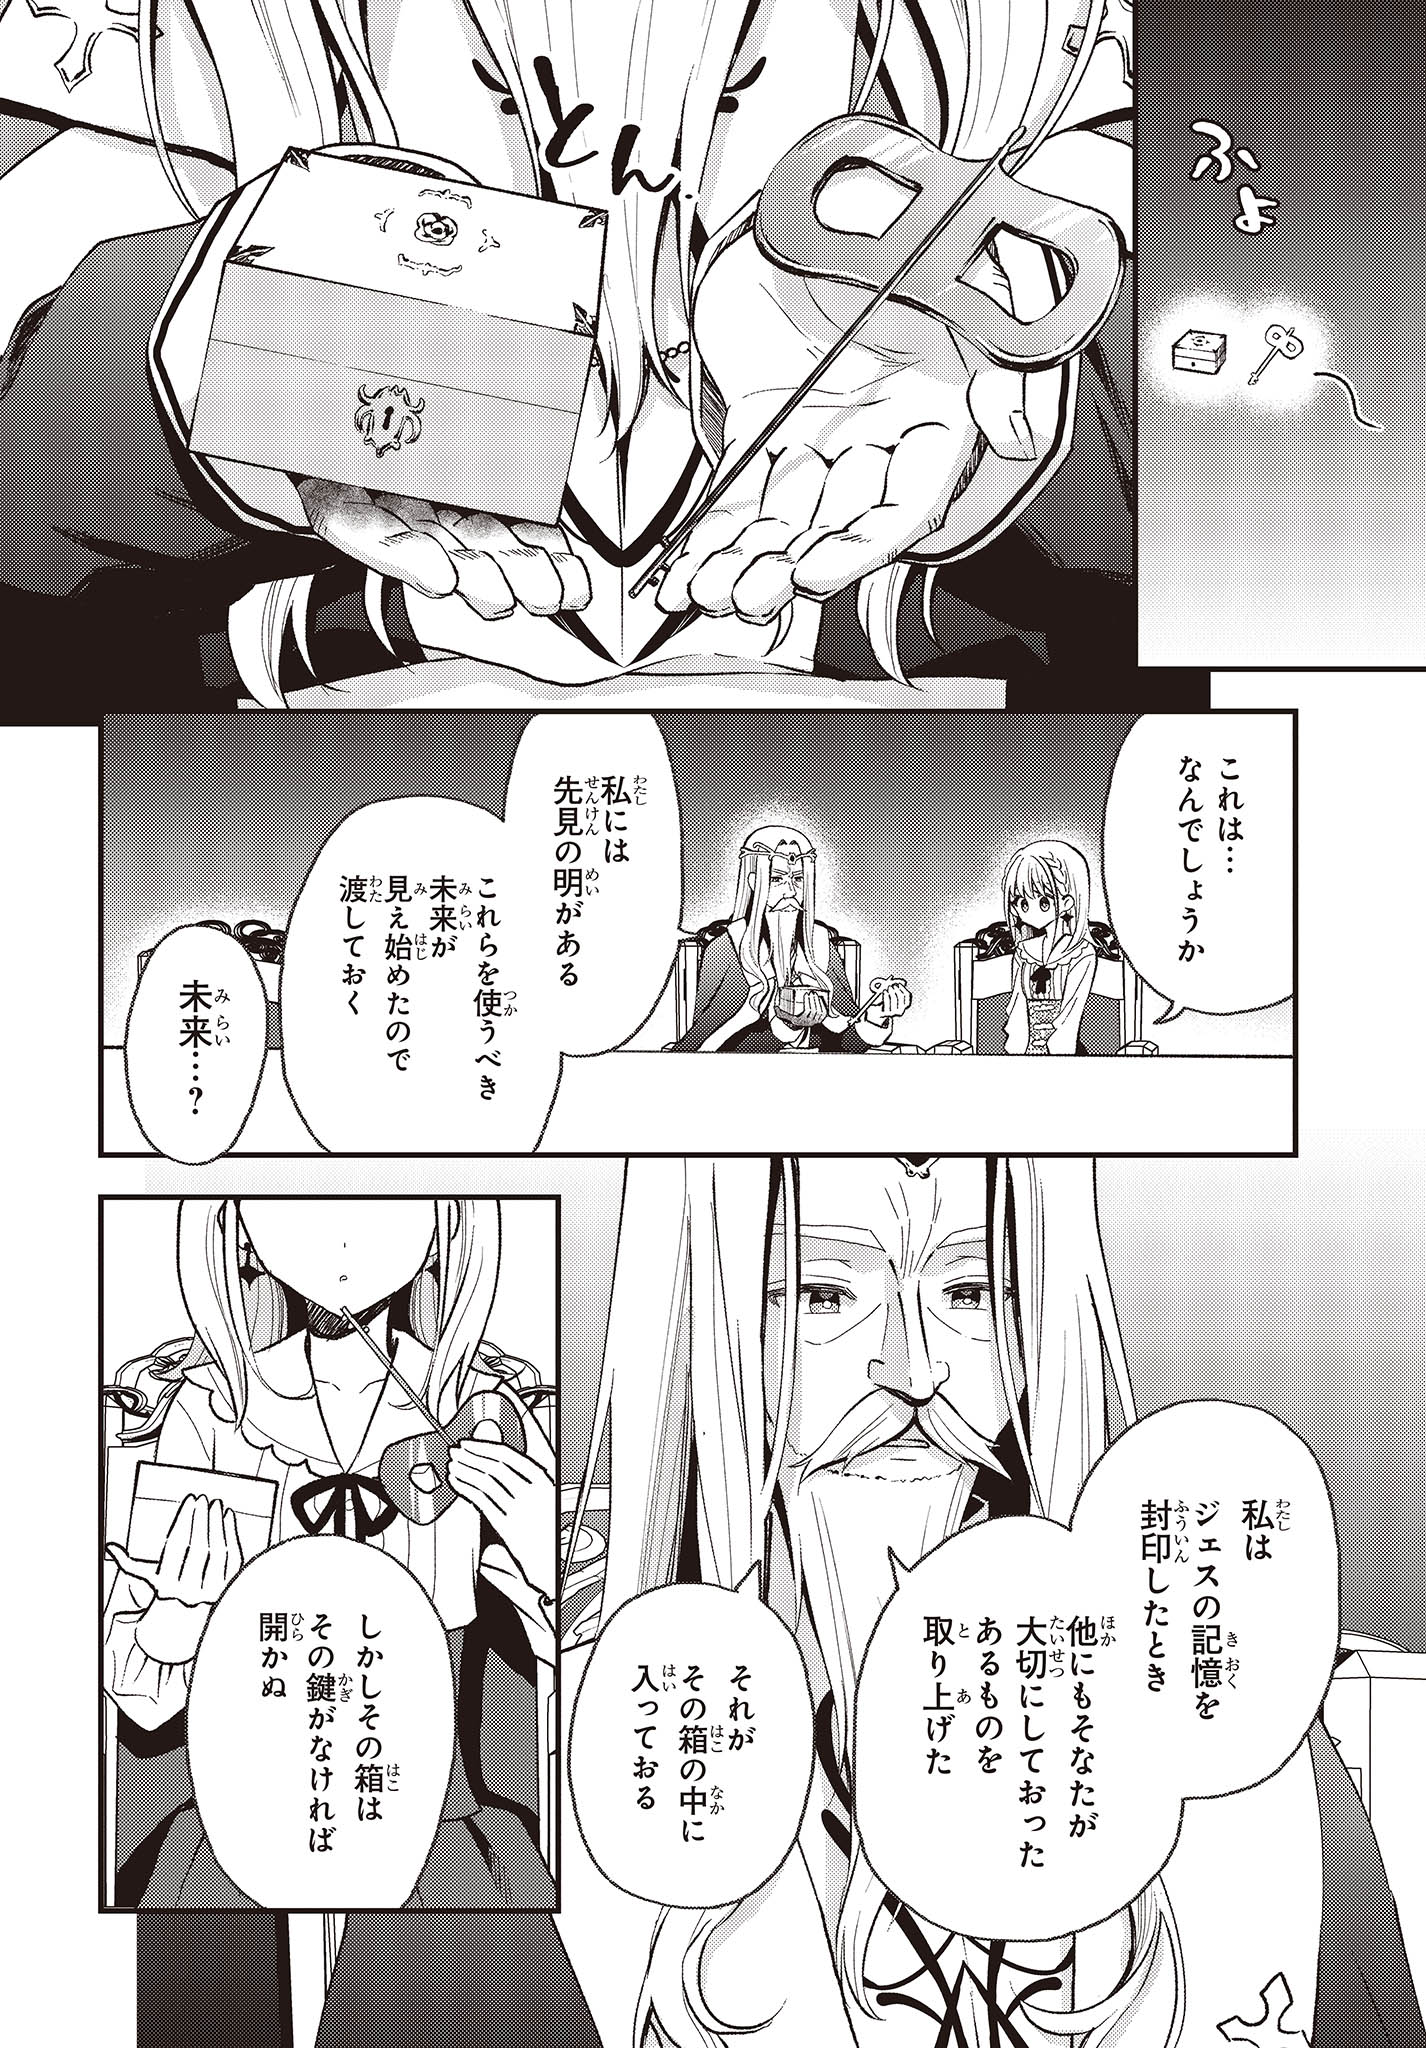 Buta no Reba wa Kanetsu Shiro - Chapter 32 - Page 3